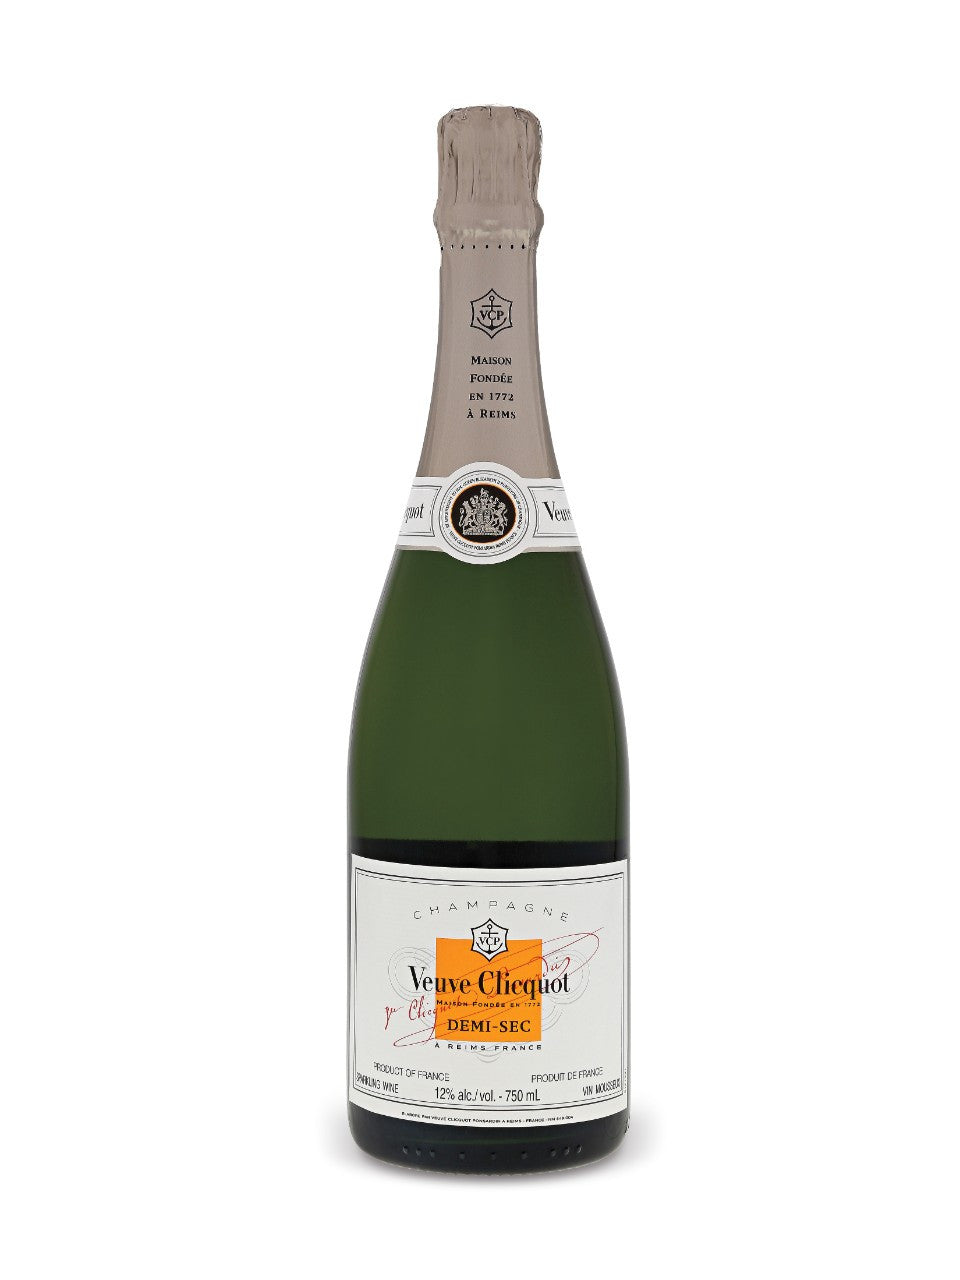 NV Veuve Clicquot Ponsardin Demi-Sec, Champagne, France (750ml